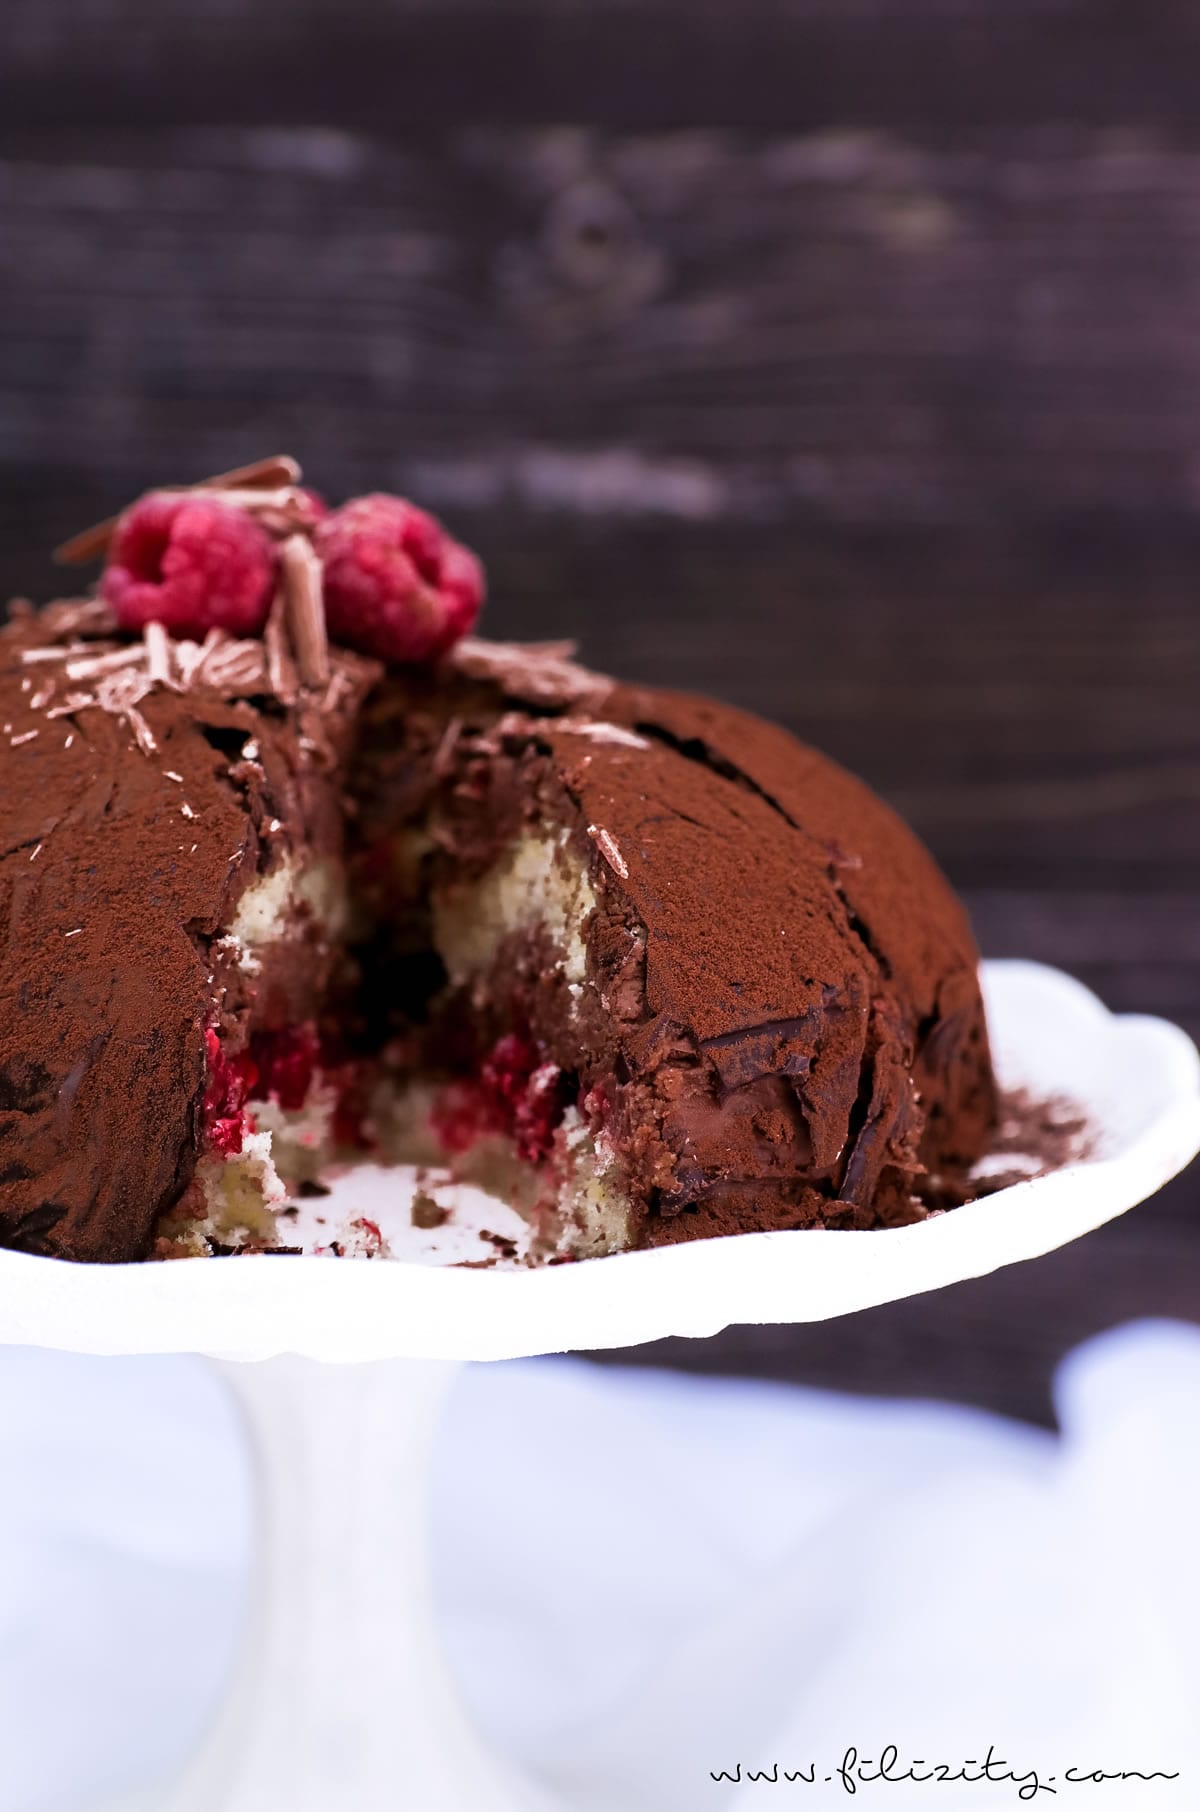 Für Schoko-Junkies: Himbeer-Trüffel-Torte | Perfektes Dessert für besondere Anlässe wie Valentinstag oder Muttertag | Filizity.com | Food-Blog aus dem Rheinland #schokolade #chocolate #torte